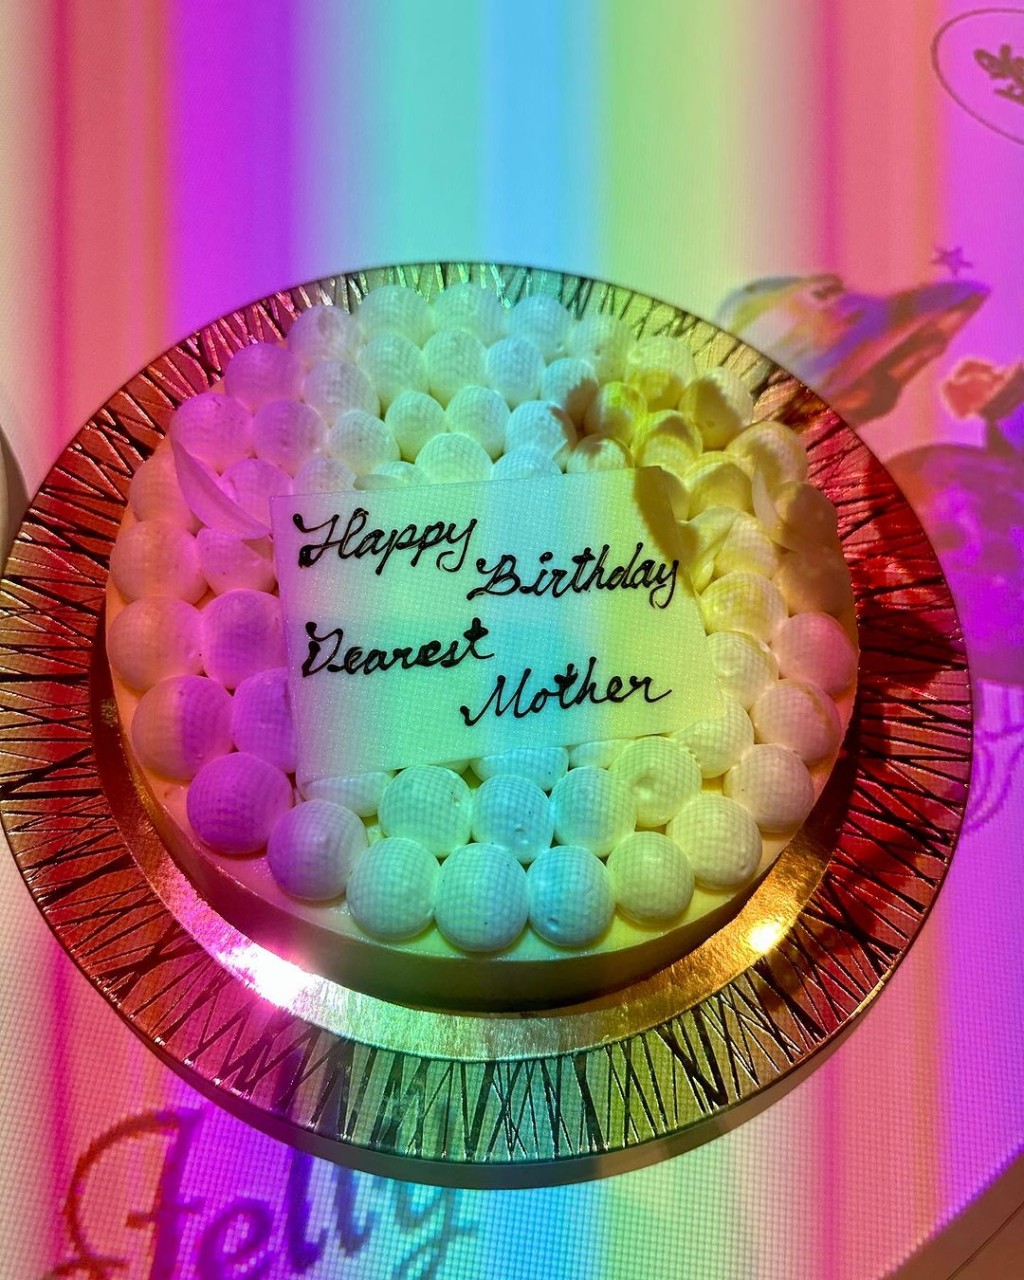 谢玲玲生日连切个蛋糕。